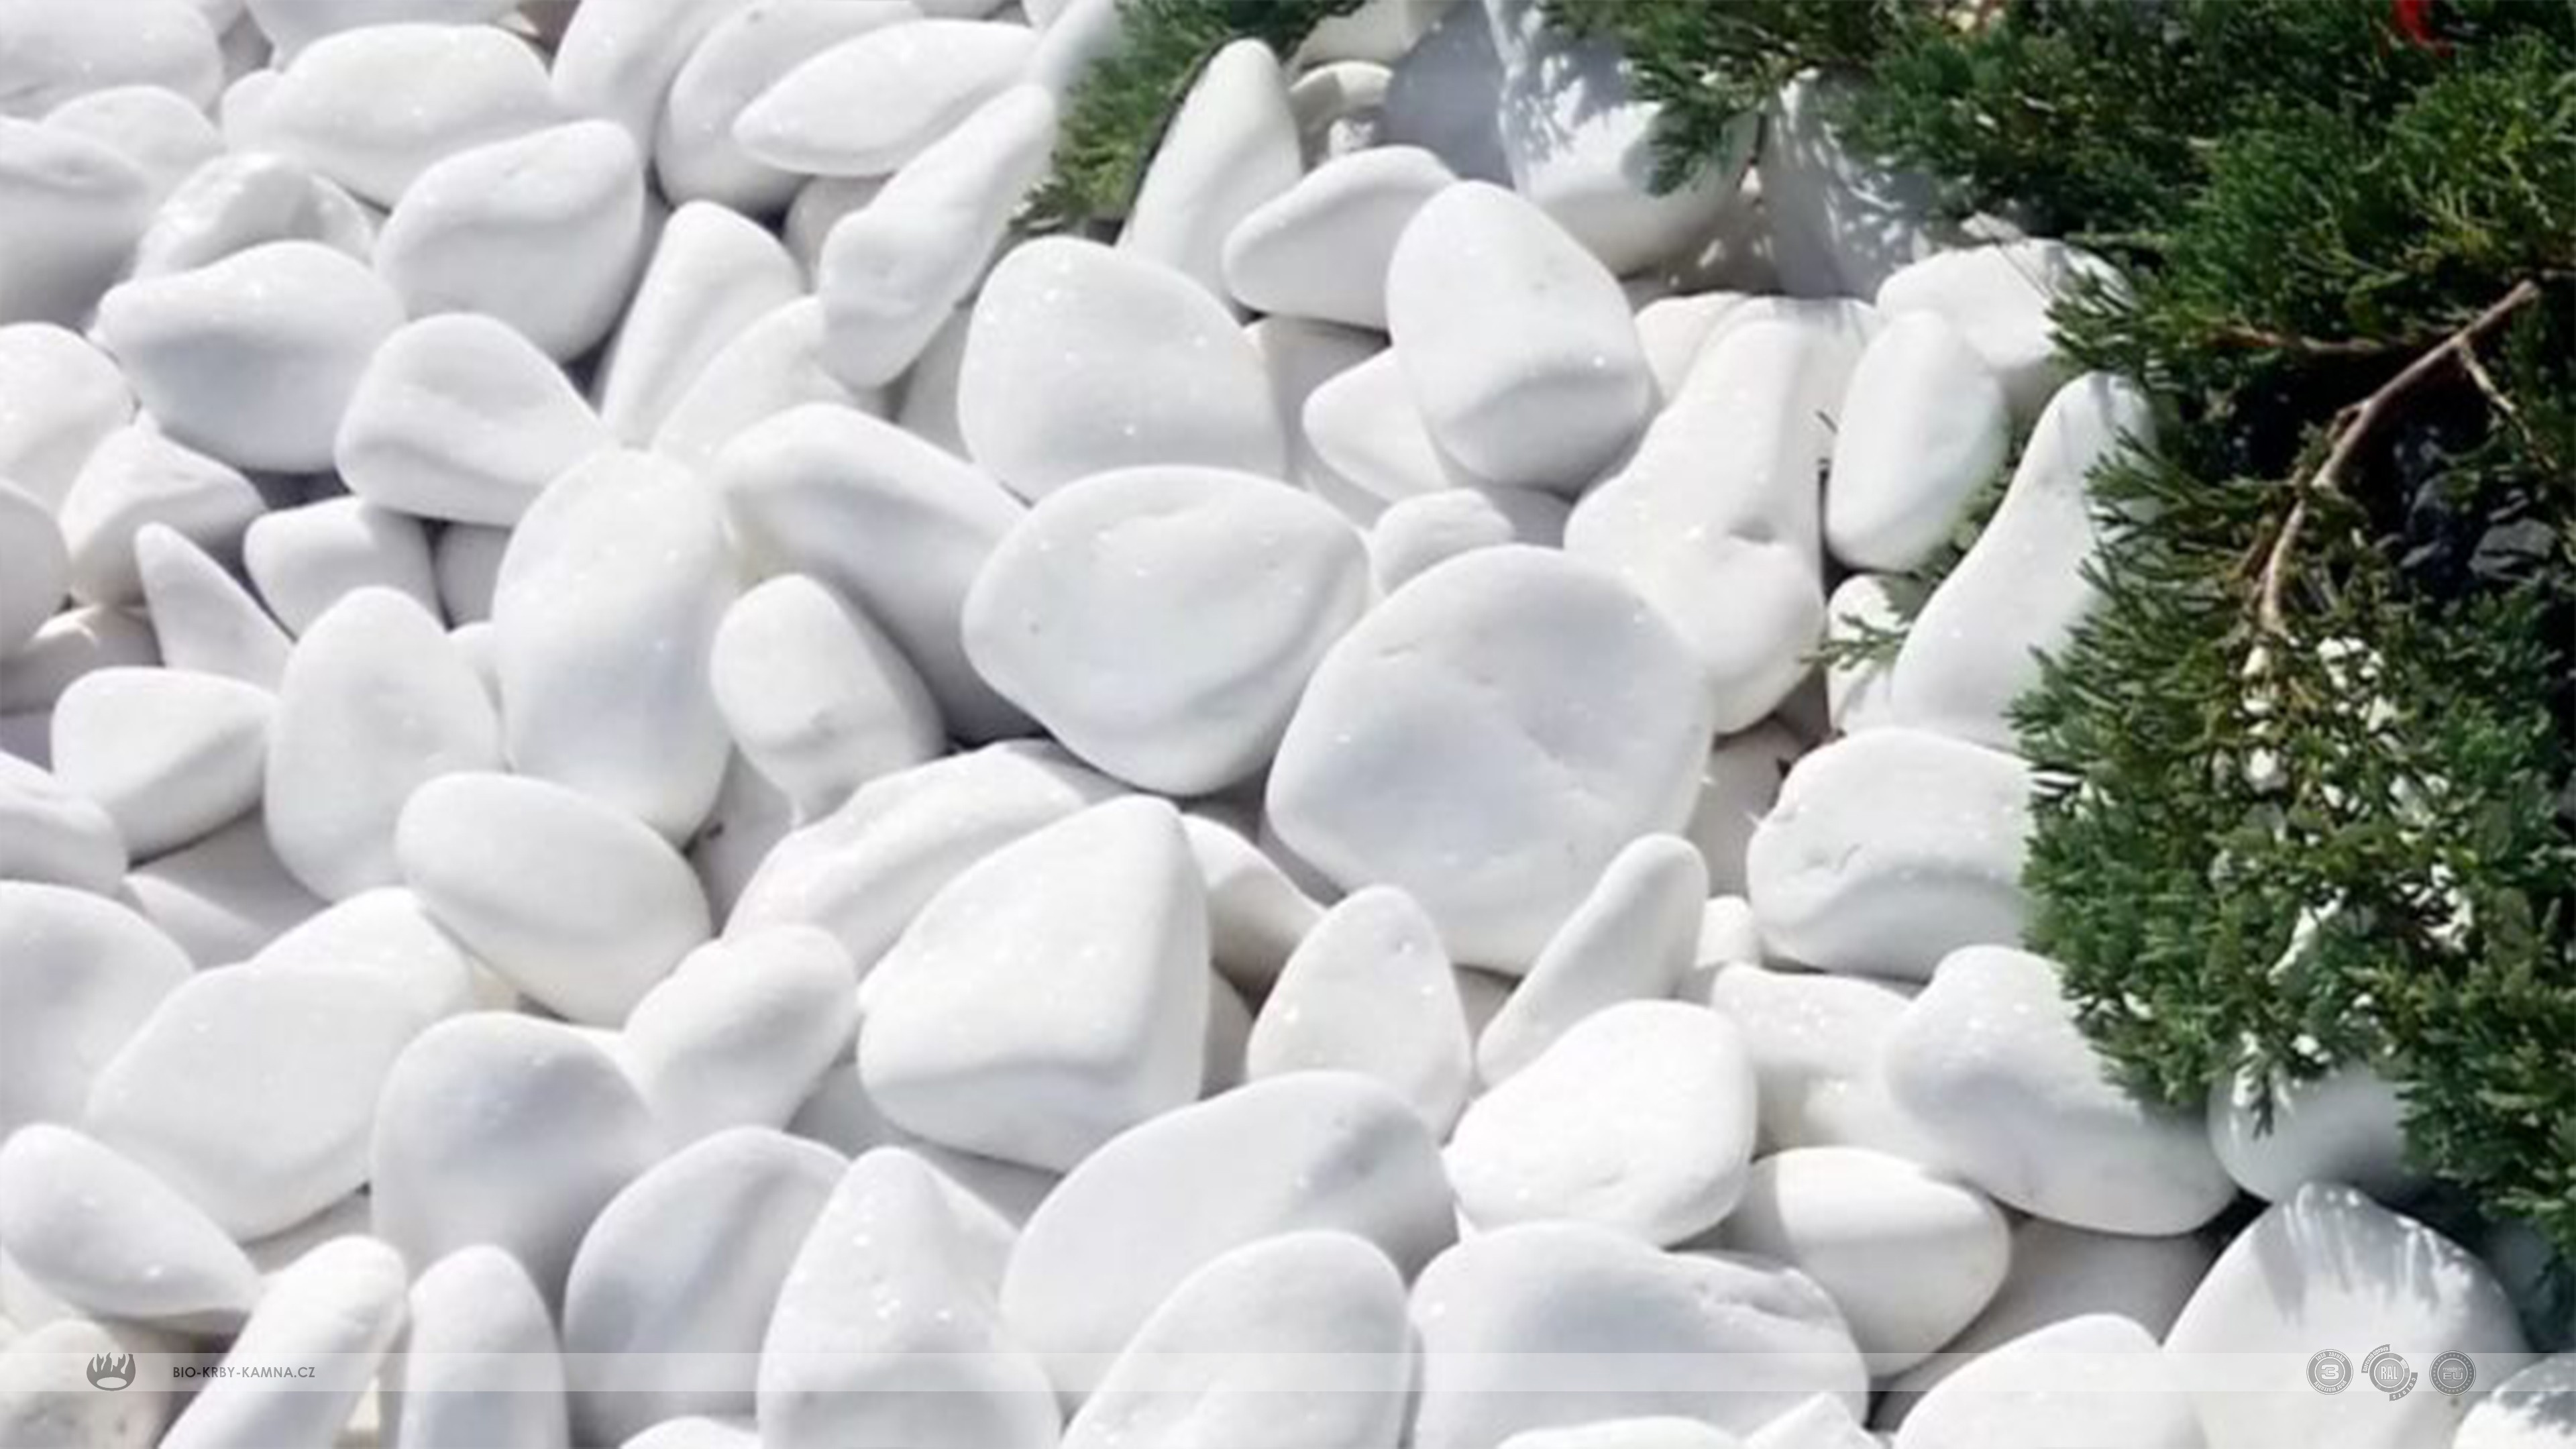 Decorative white stones - marble